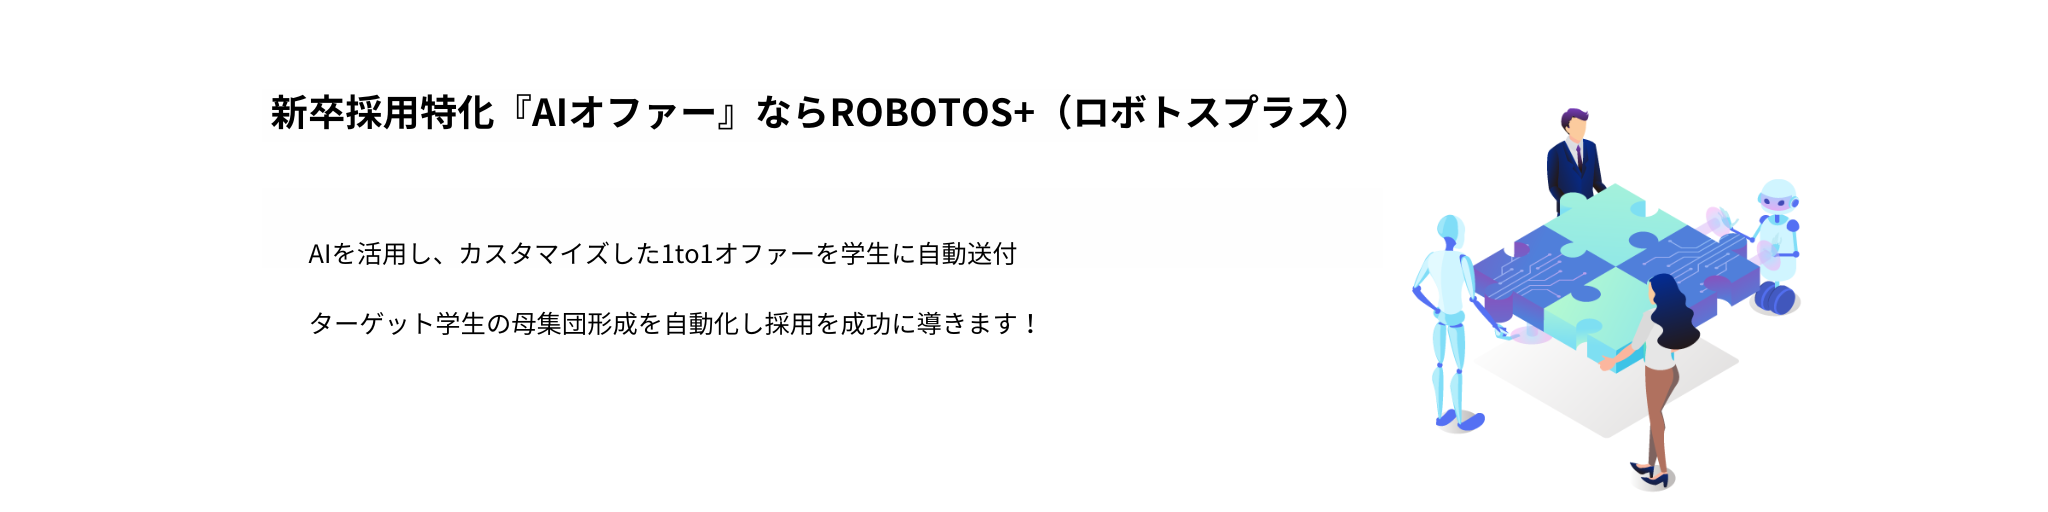 新卒採用特化AIオファー(AIスカウト)ならROBOTOS+(ロボトスプラス) for Recruiter